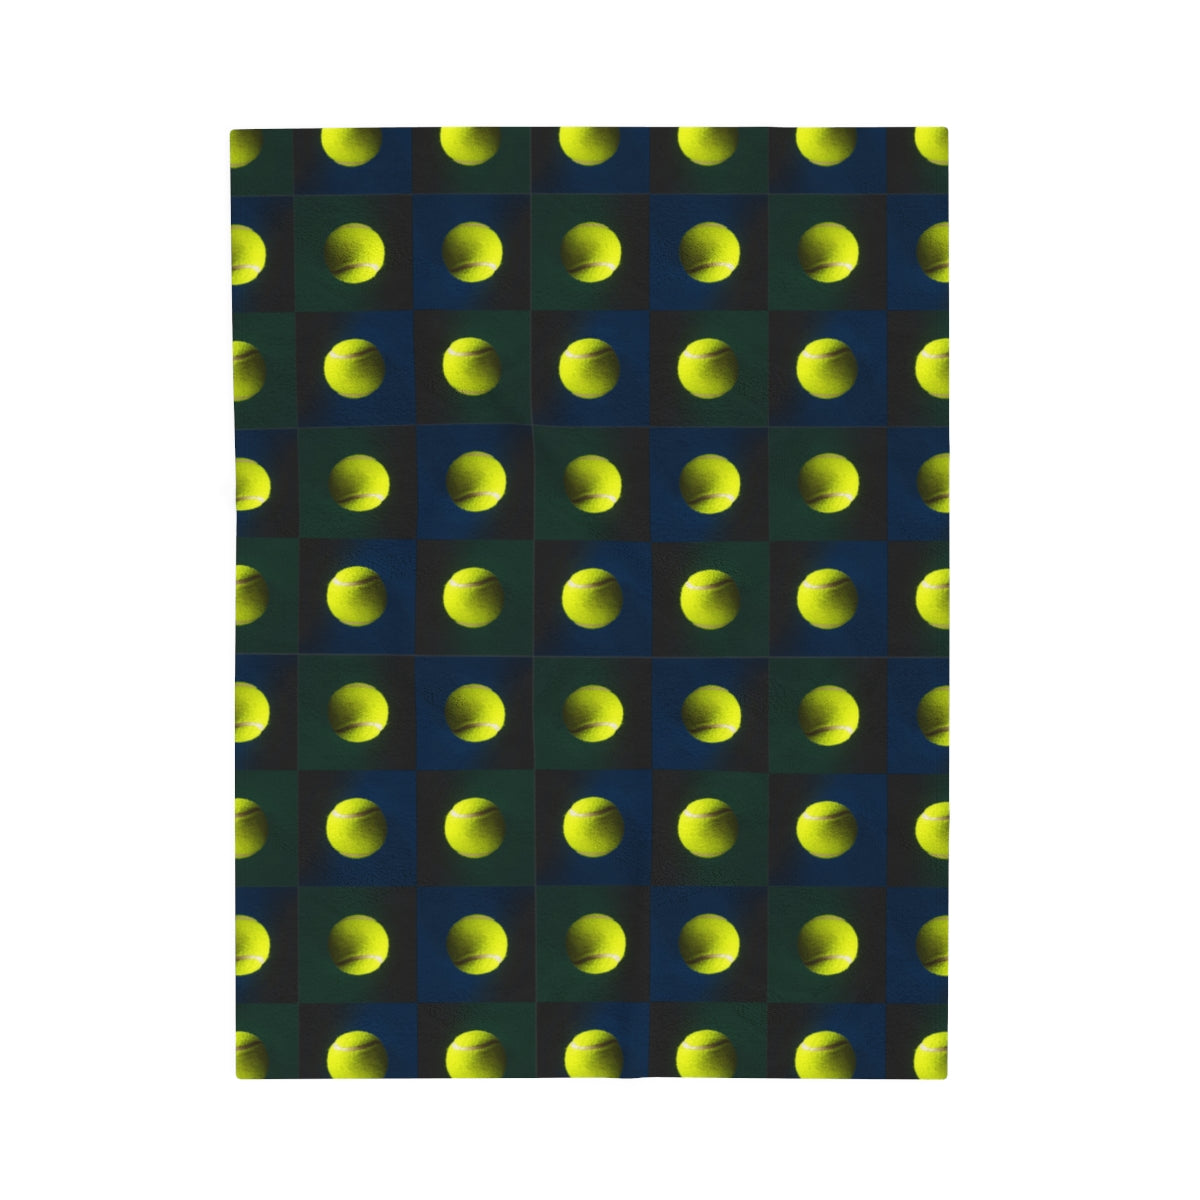 Plush TENNIS Blanket, Tennis Player Gift, Tennis Ball Pattern on Velveteen blanket in 3 sizes